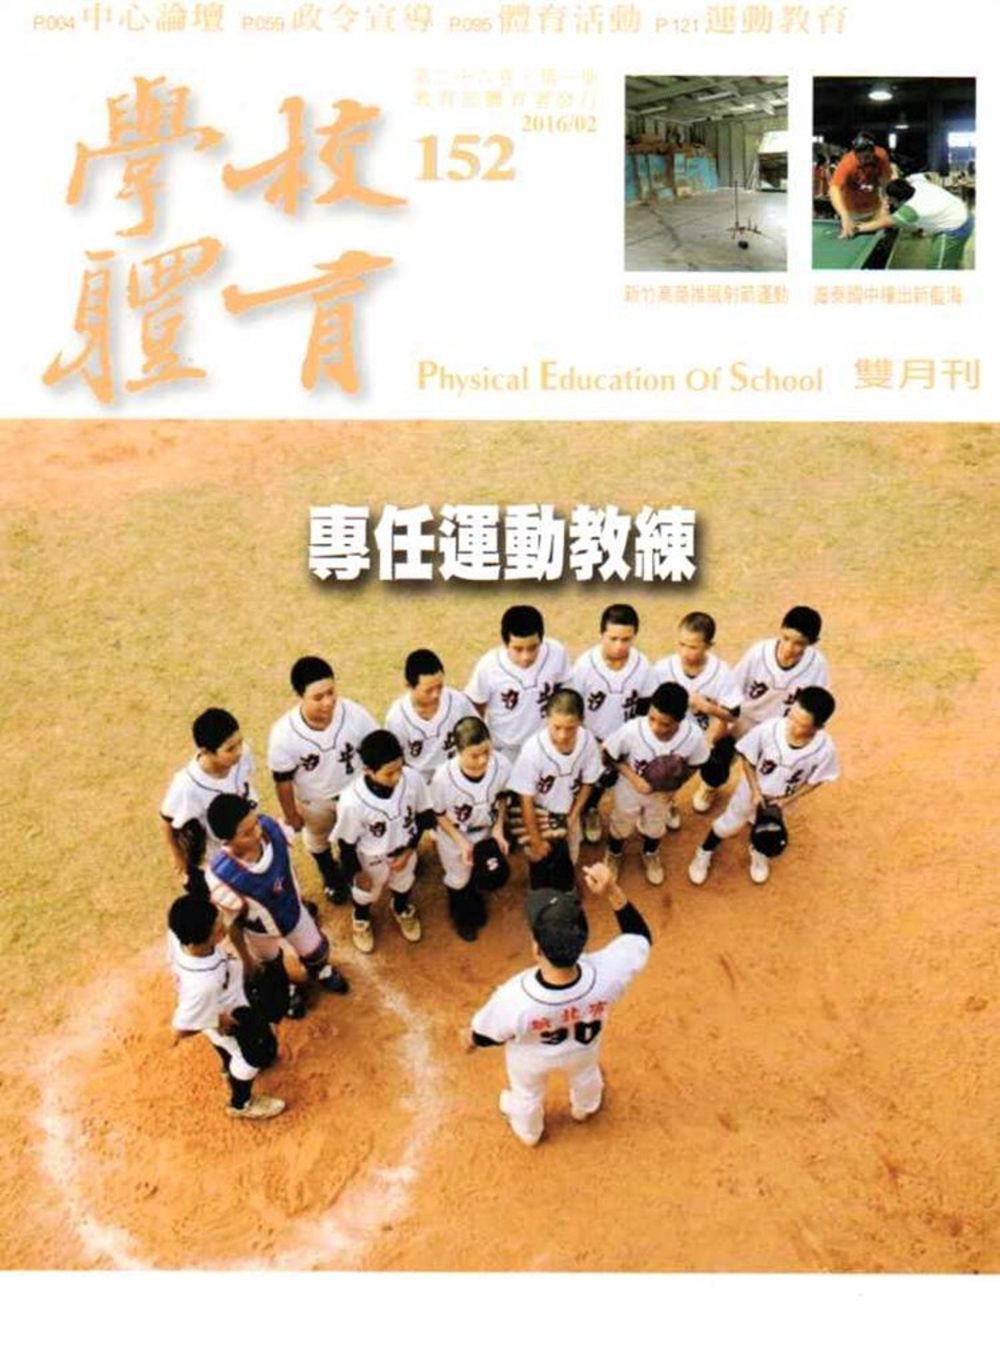 學校體育雙月刊152(2016/02)